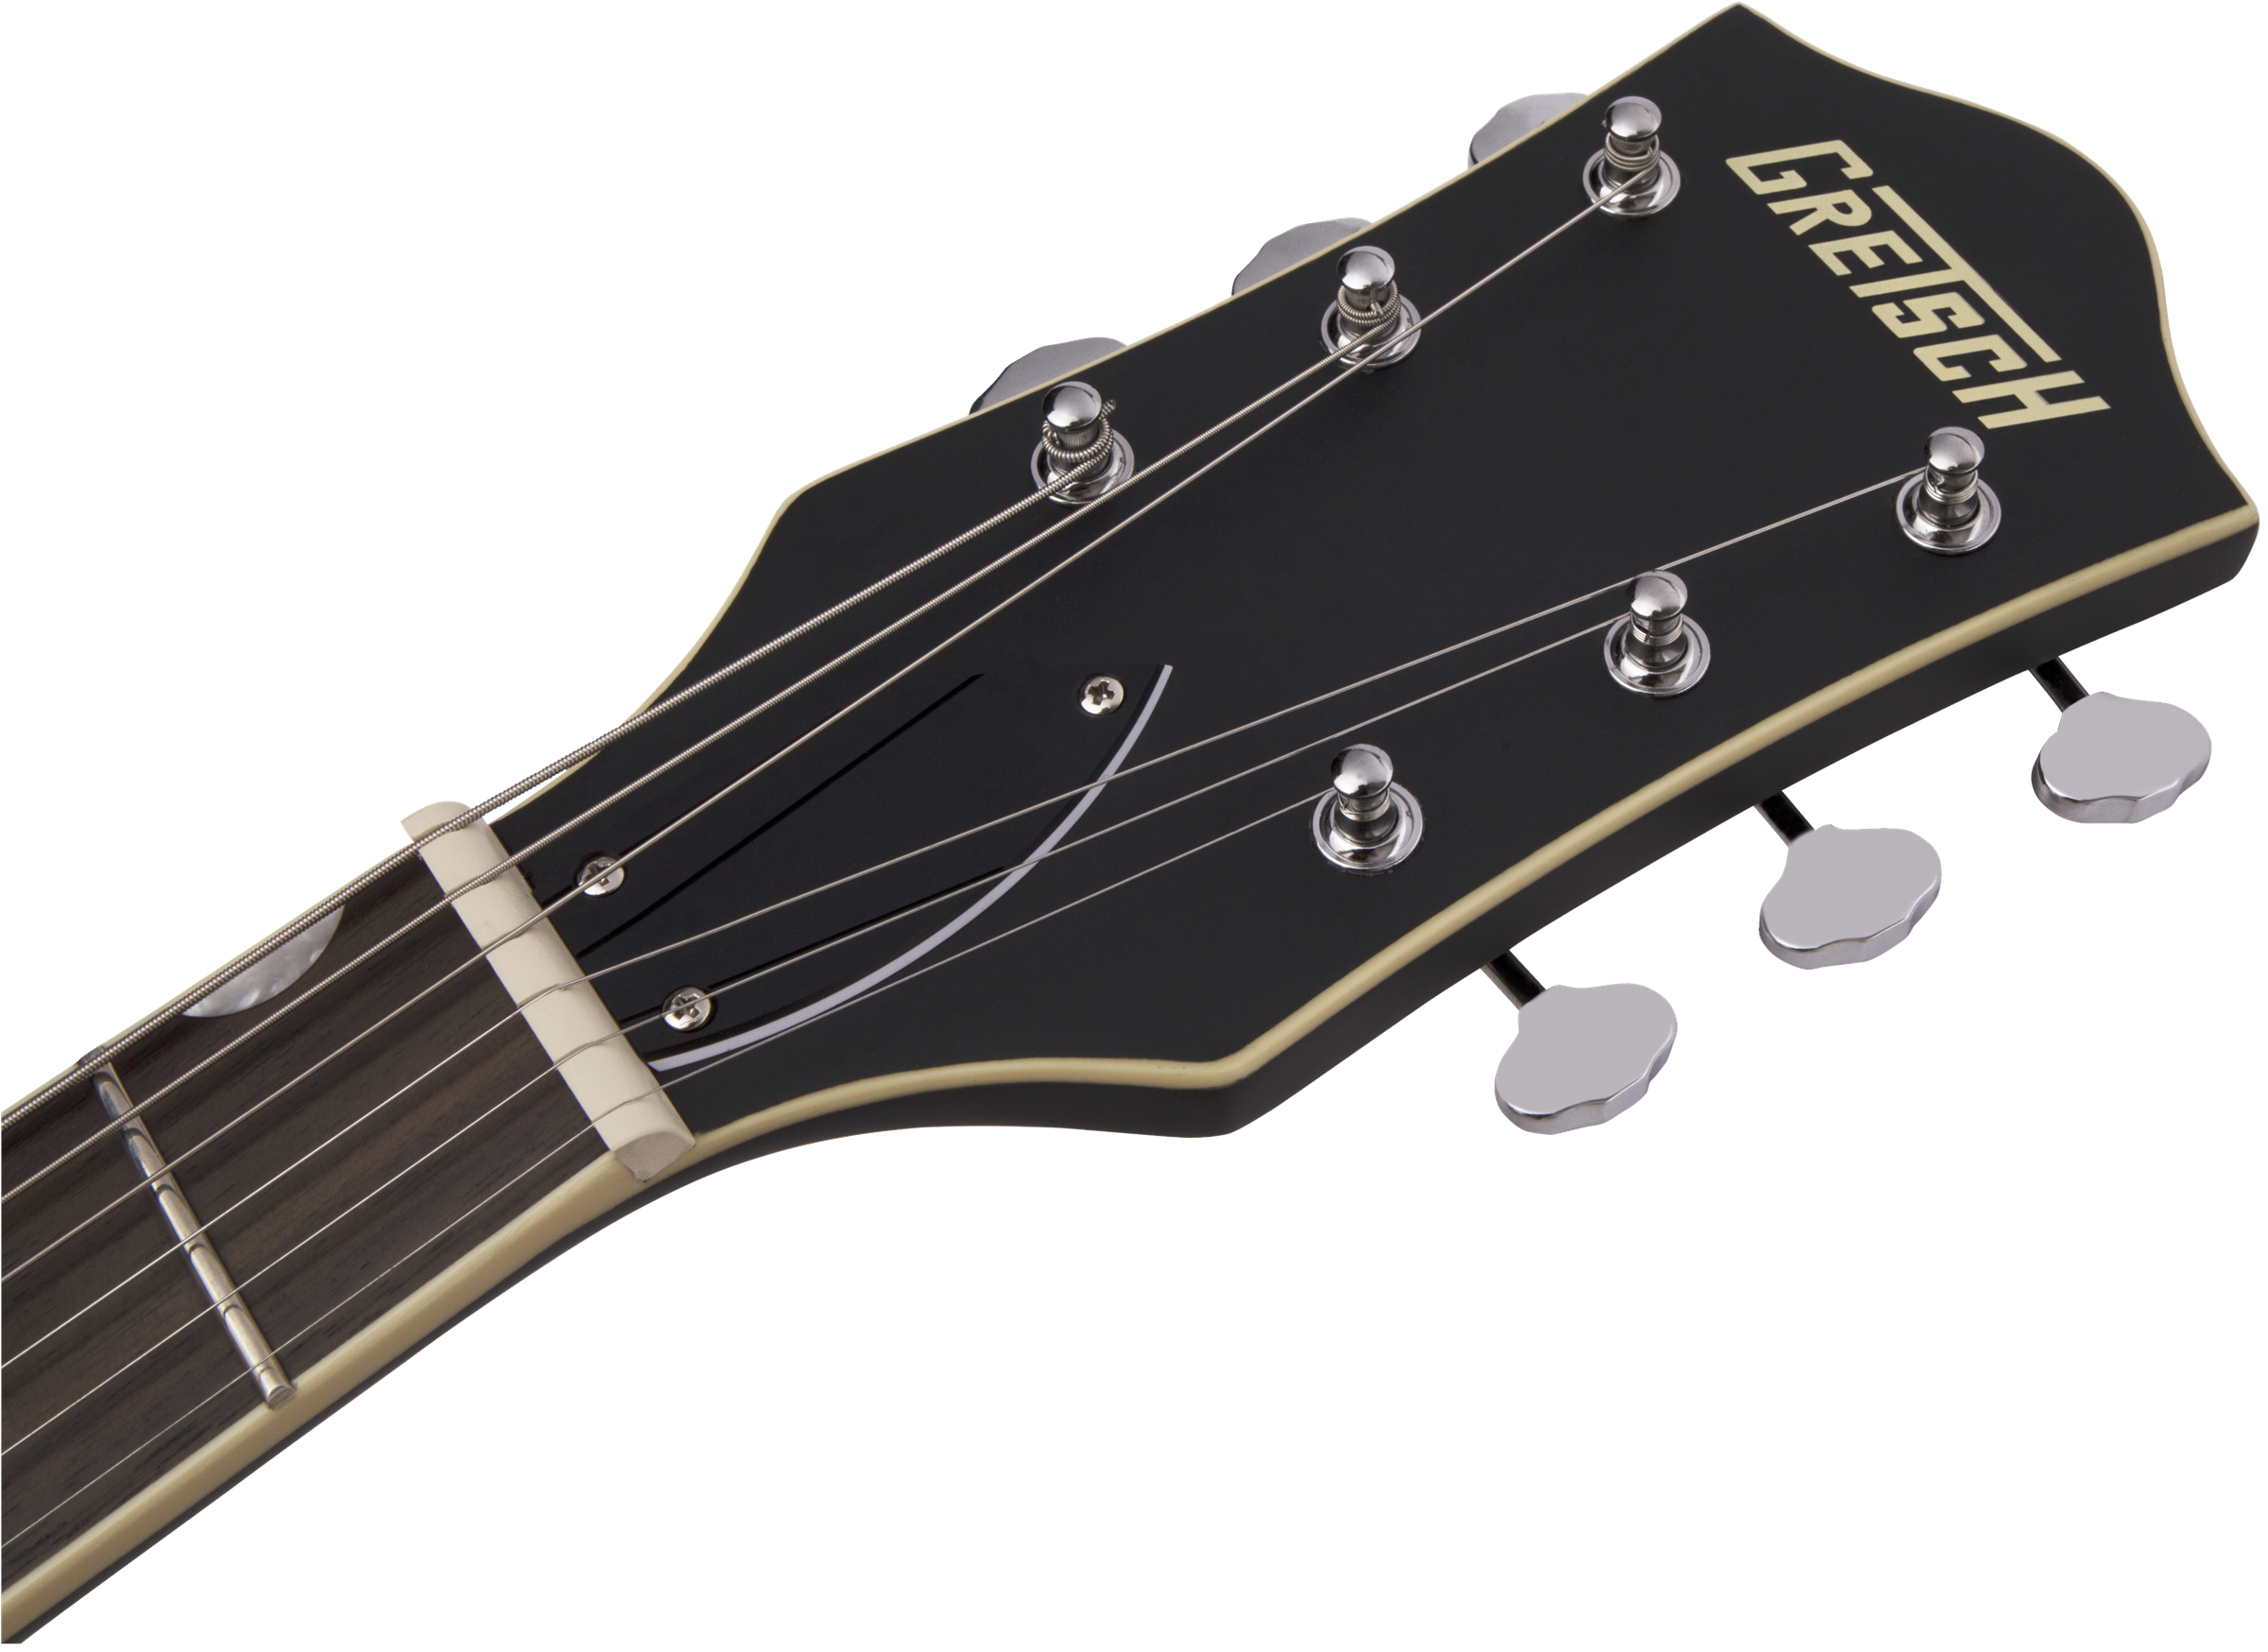 Gretsch G5410T Rat Rod Bigsby E-Gitarre RW MAT BLK